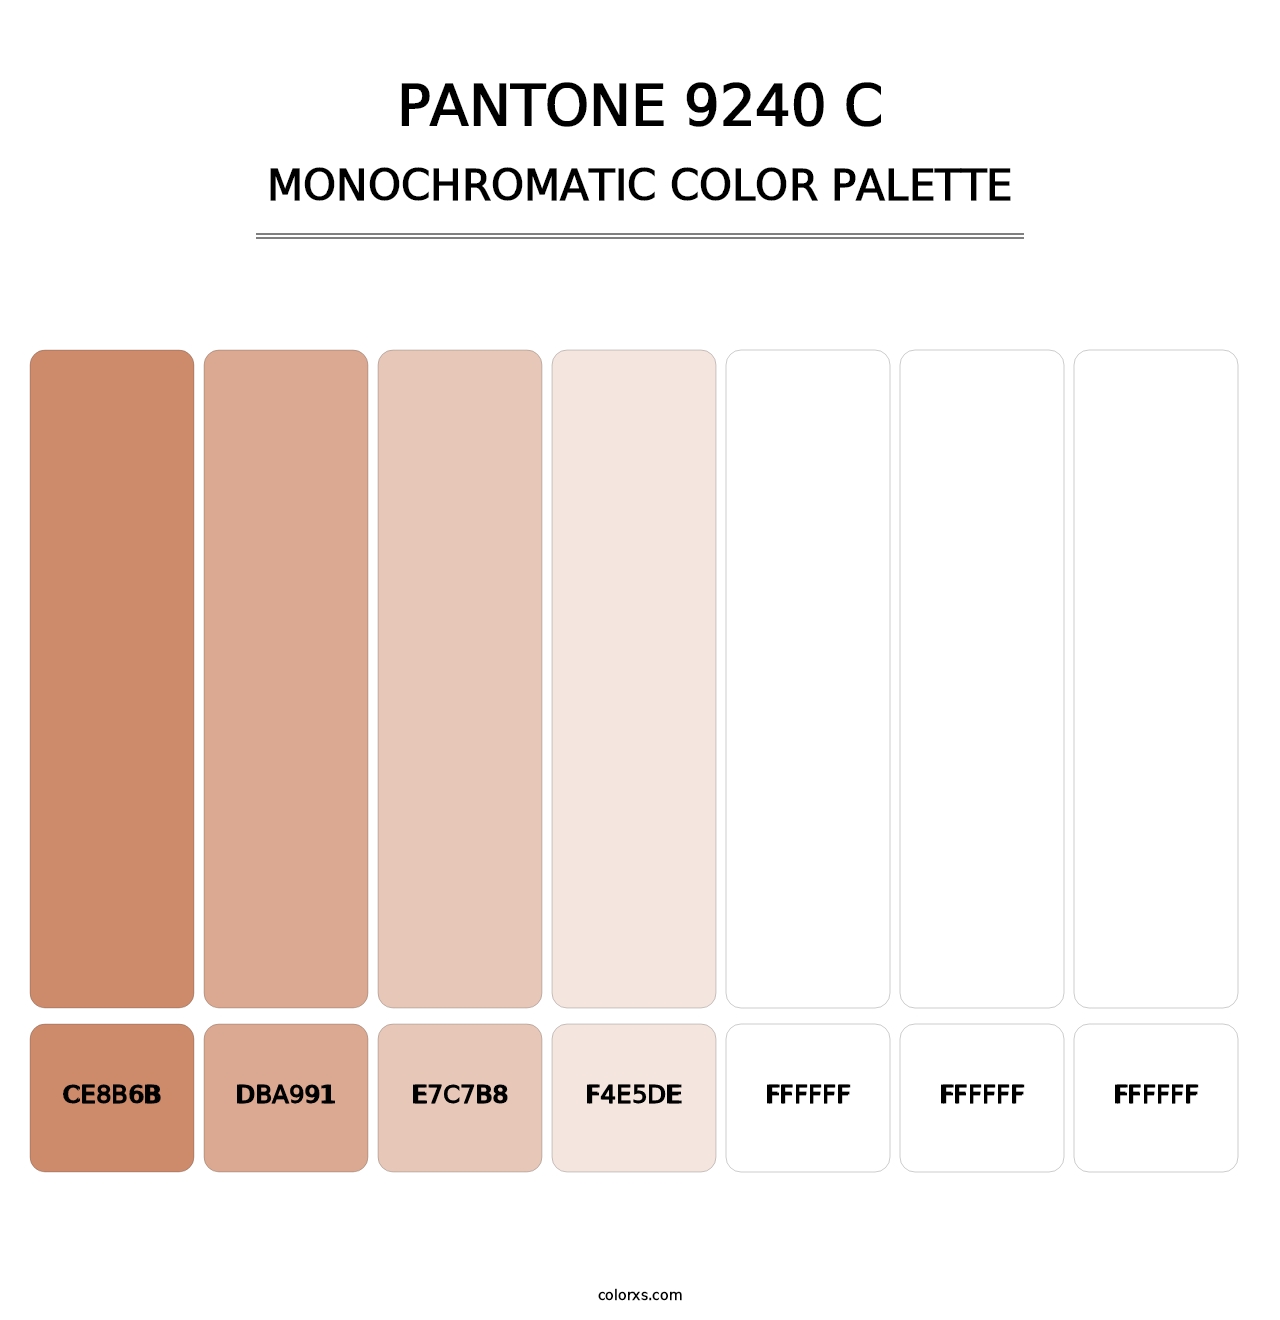 PANTONE 9240 C - Monochromatic Color Palette